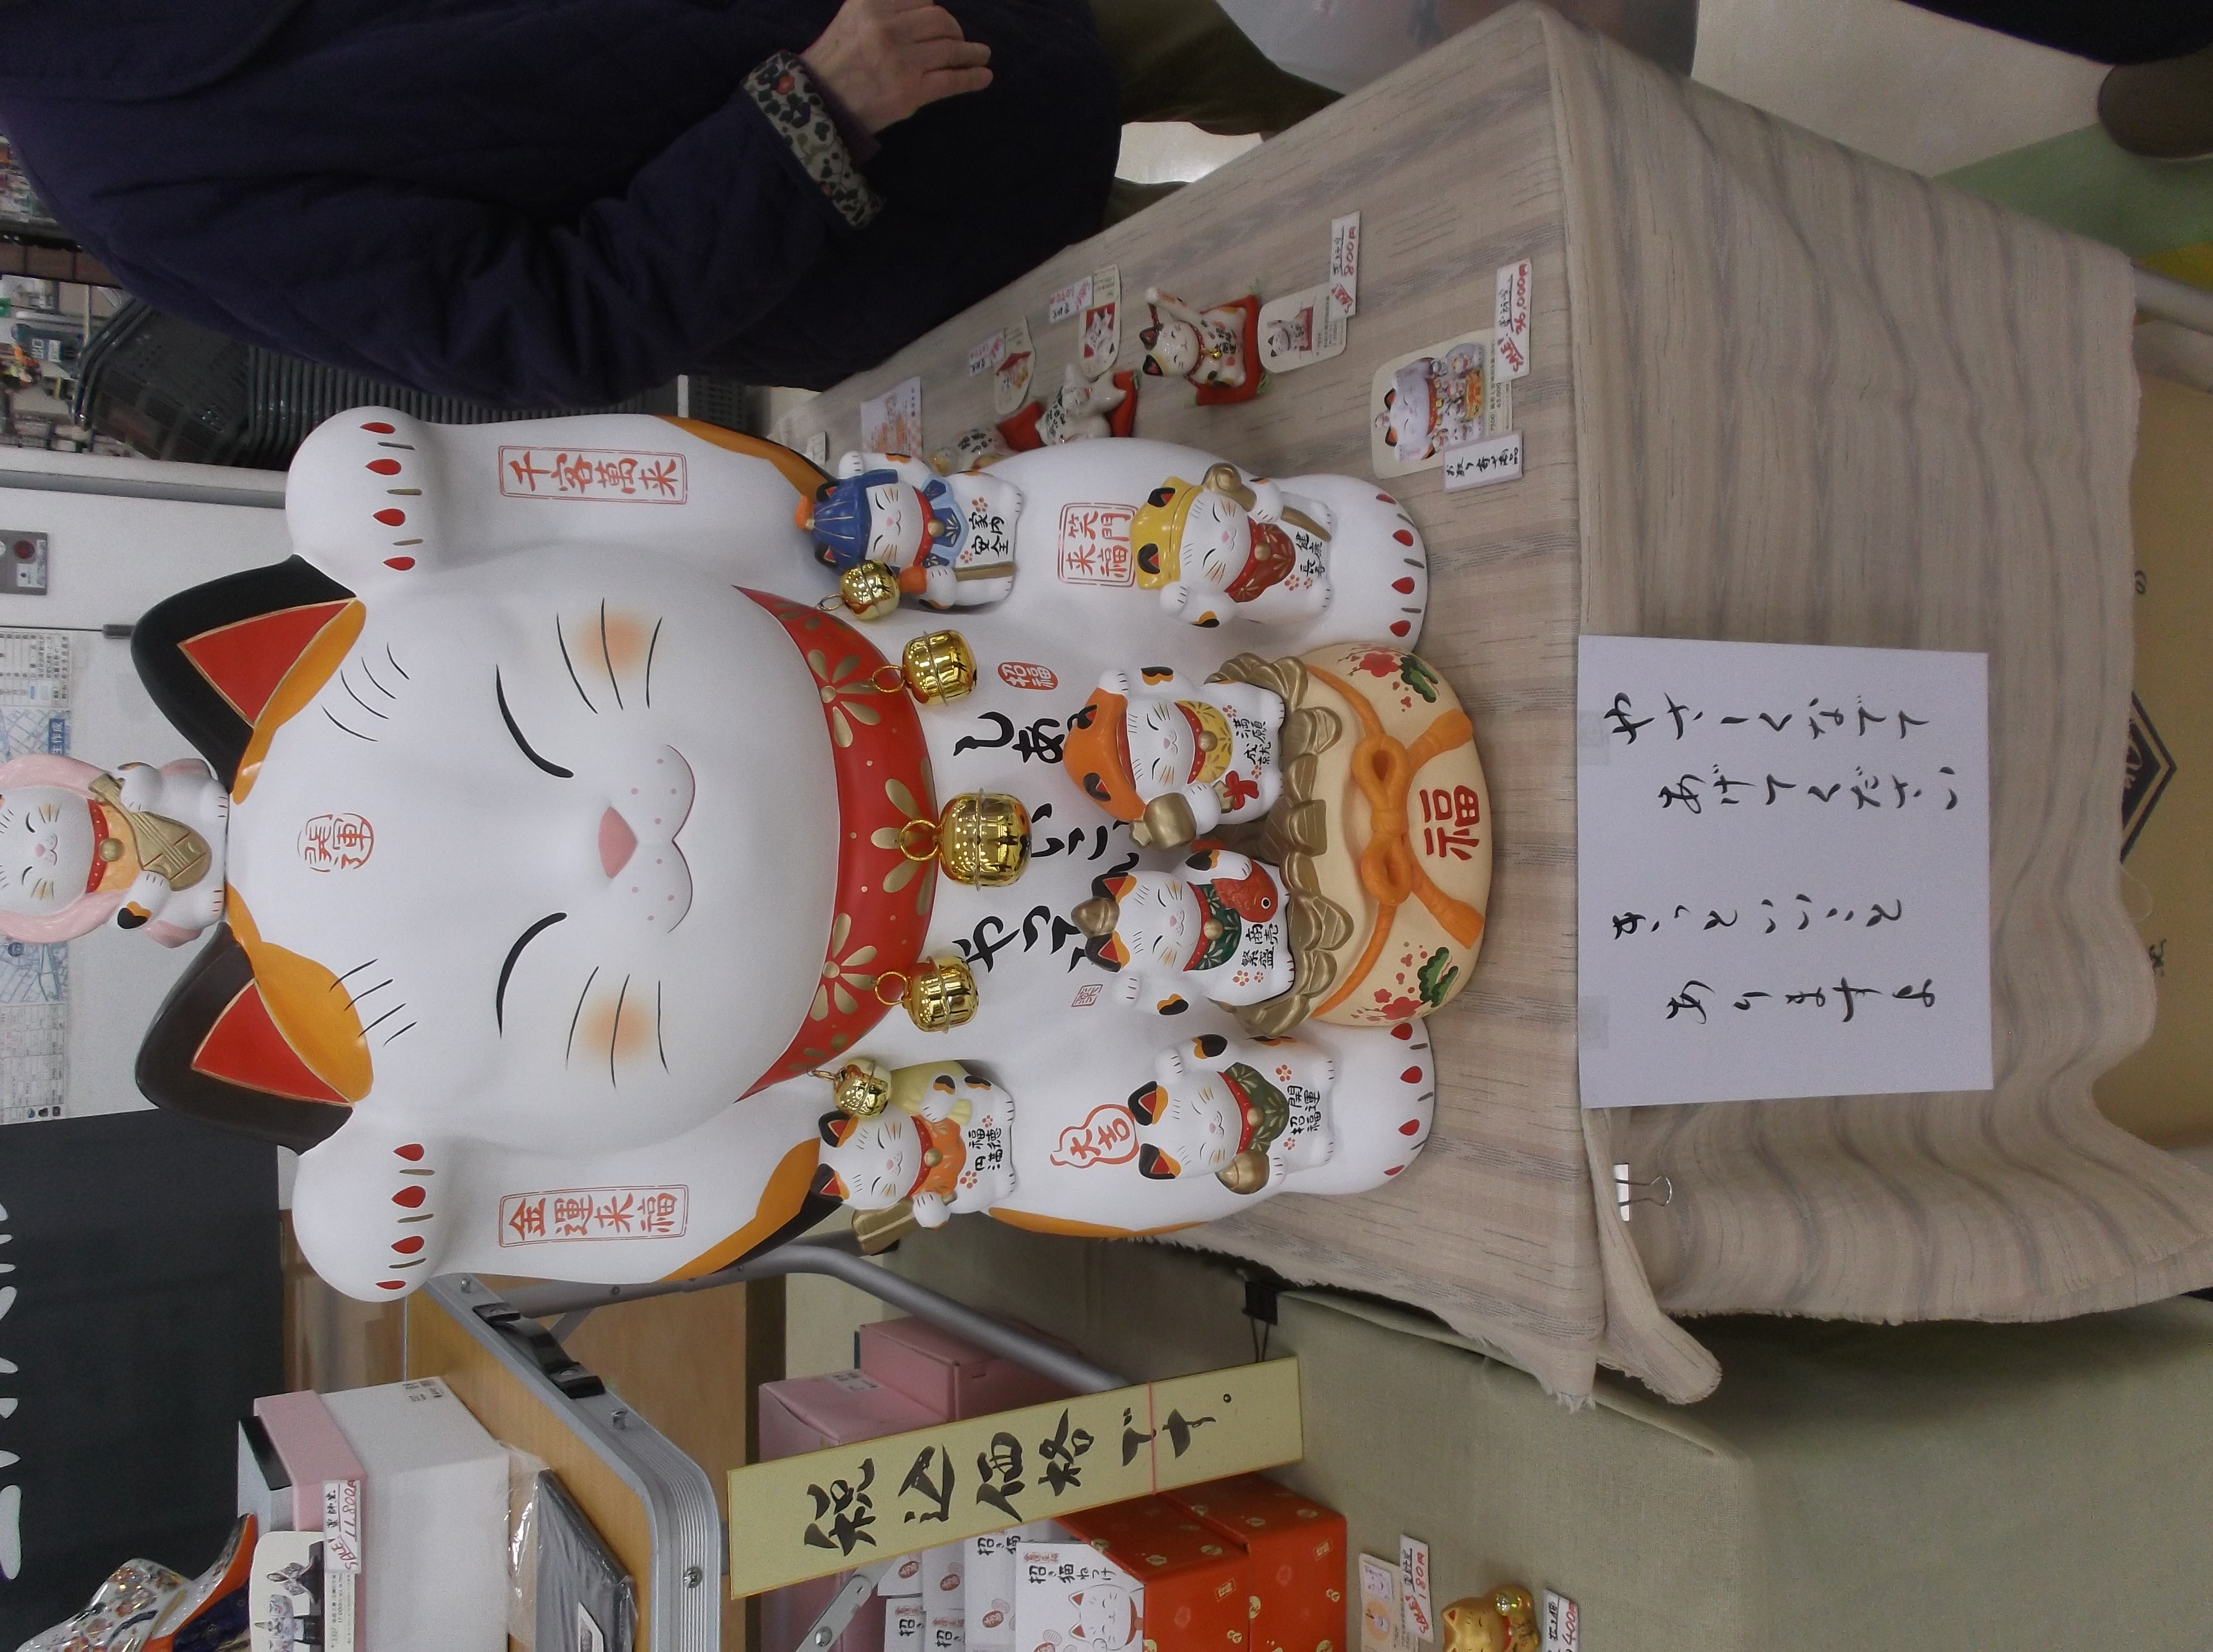 店頭で素焼き人形を販売していました。「招き猫を撫でてください」の貼紙に誘われ、皆で招き猫を撫でました。